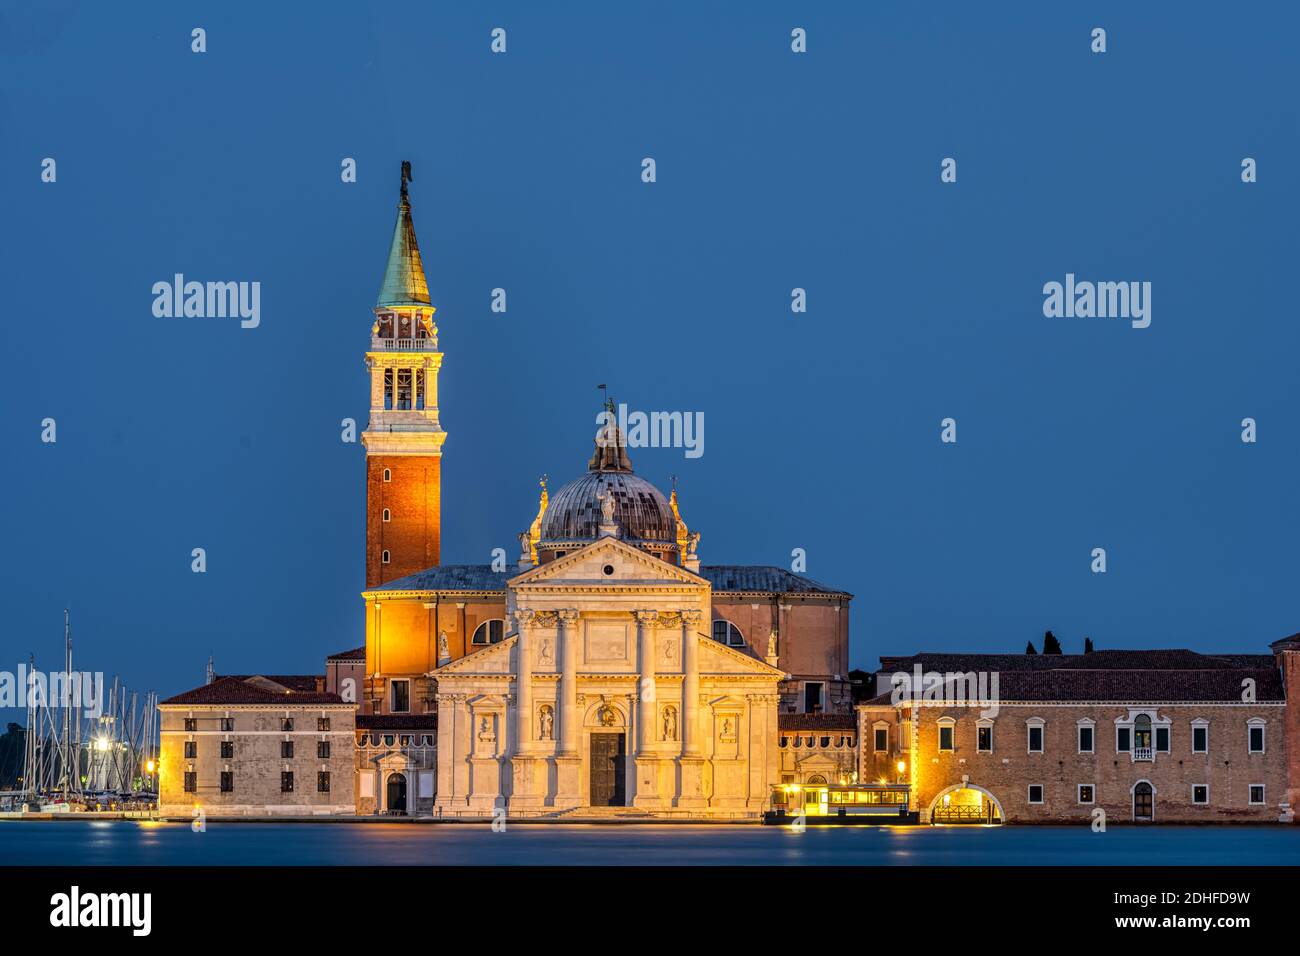 The San Giorgio Maggiore church in Venice at night Stock Photo